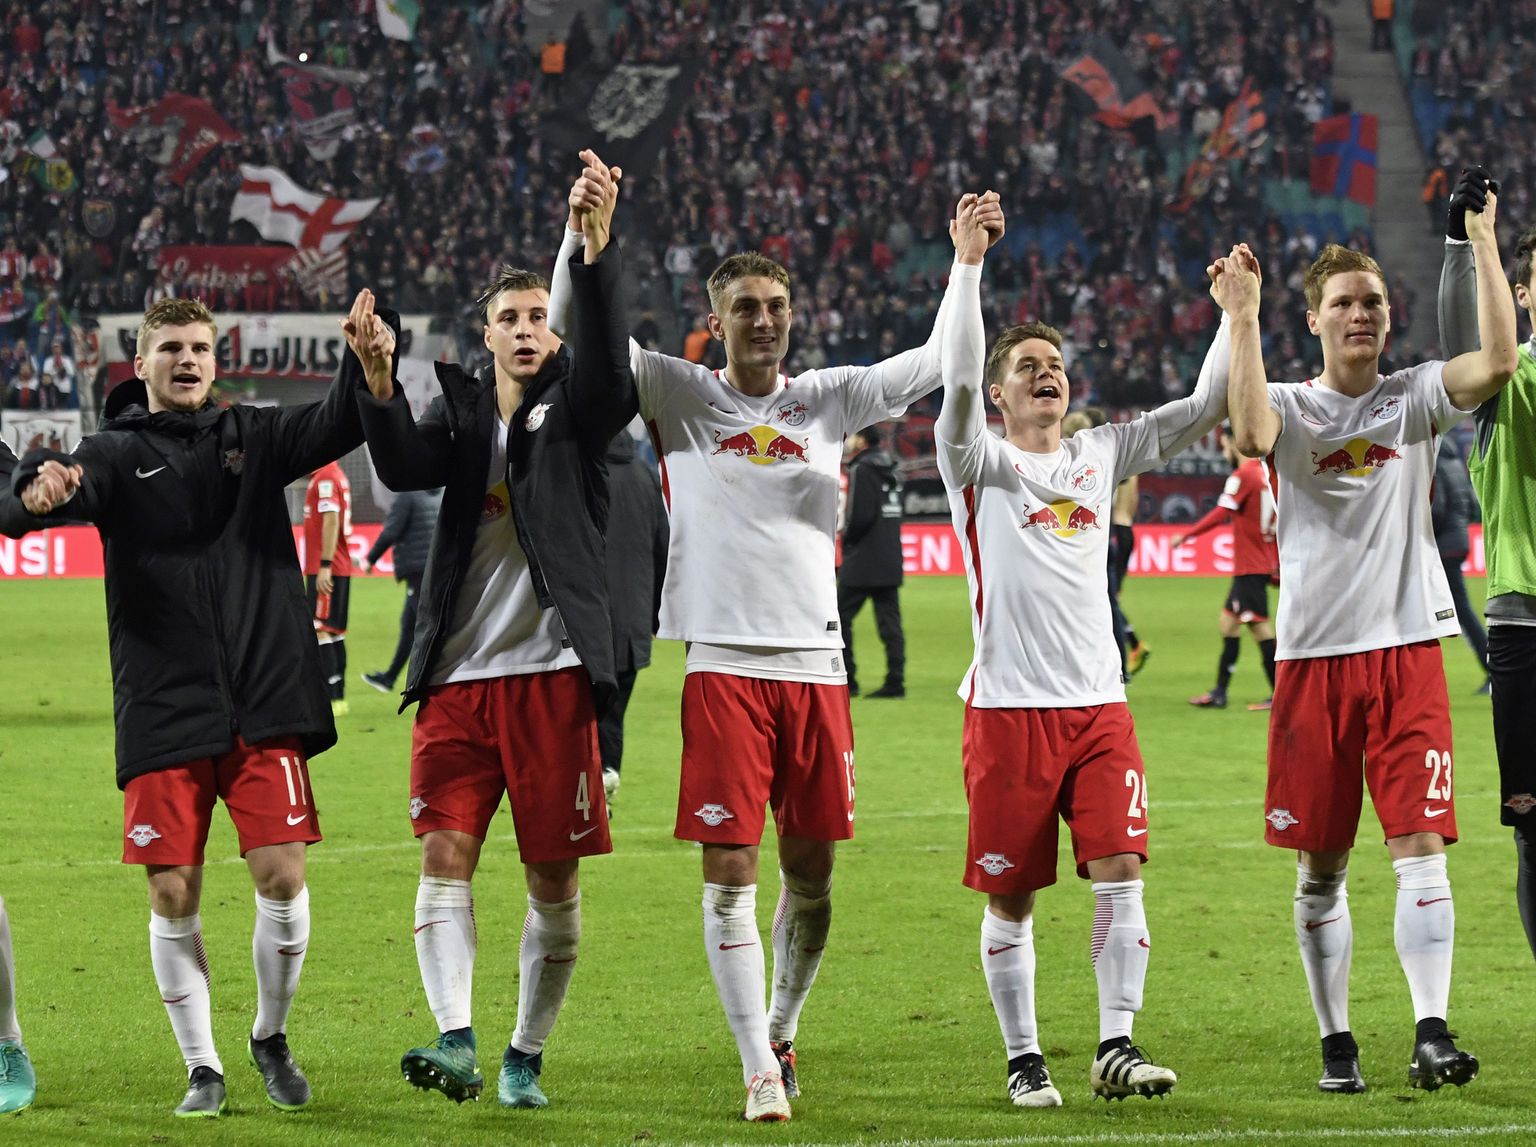 RB Leipzigi mängijad tänamas klubi poolehoidjaid. Viimaste arv kasvab endisel Ida-Saksamaal pidevalt.